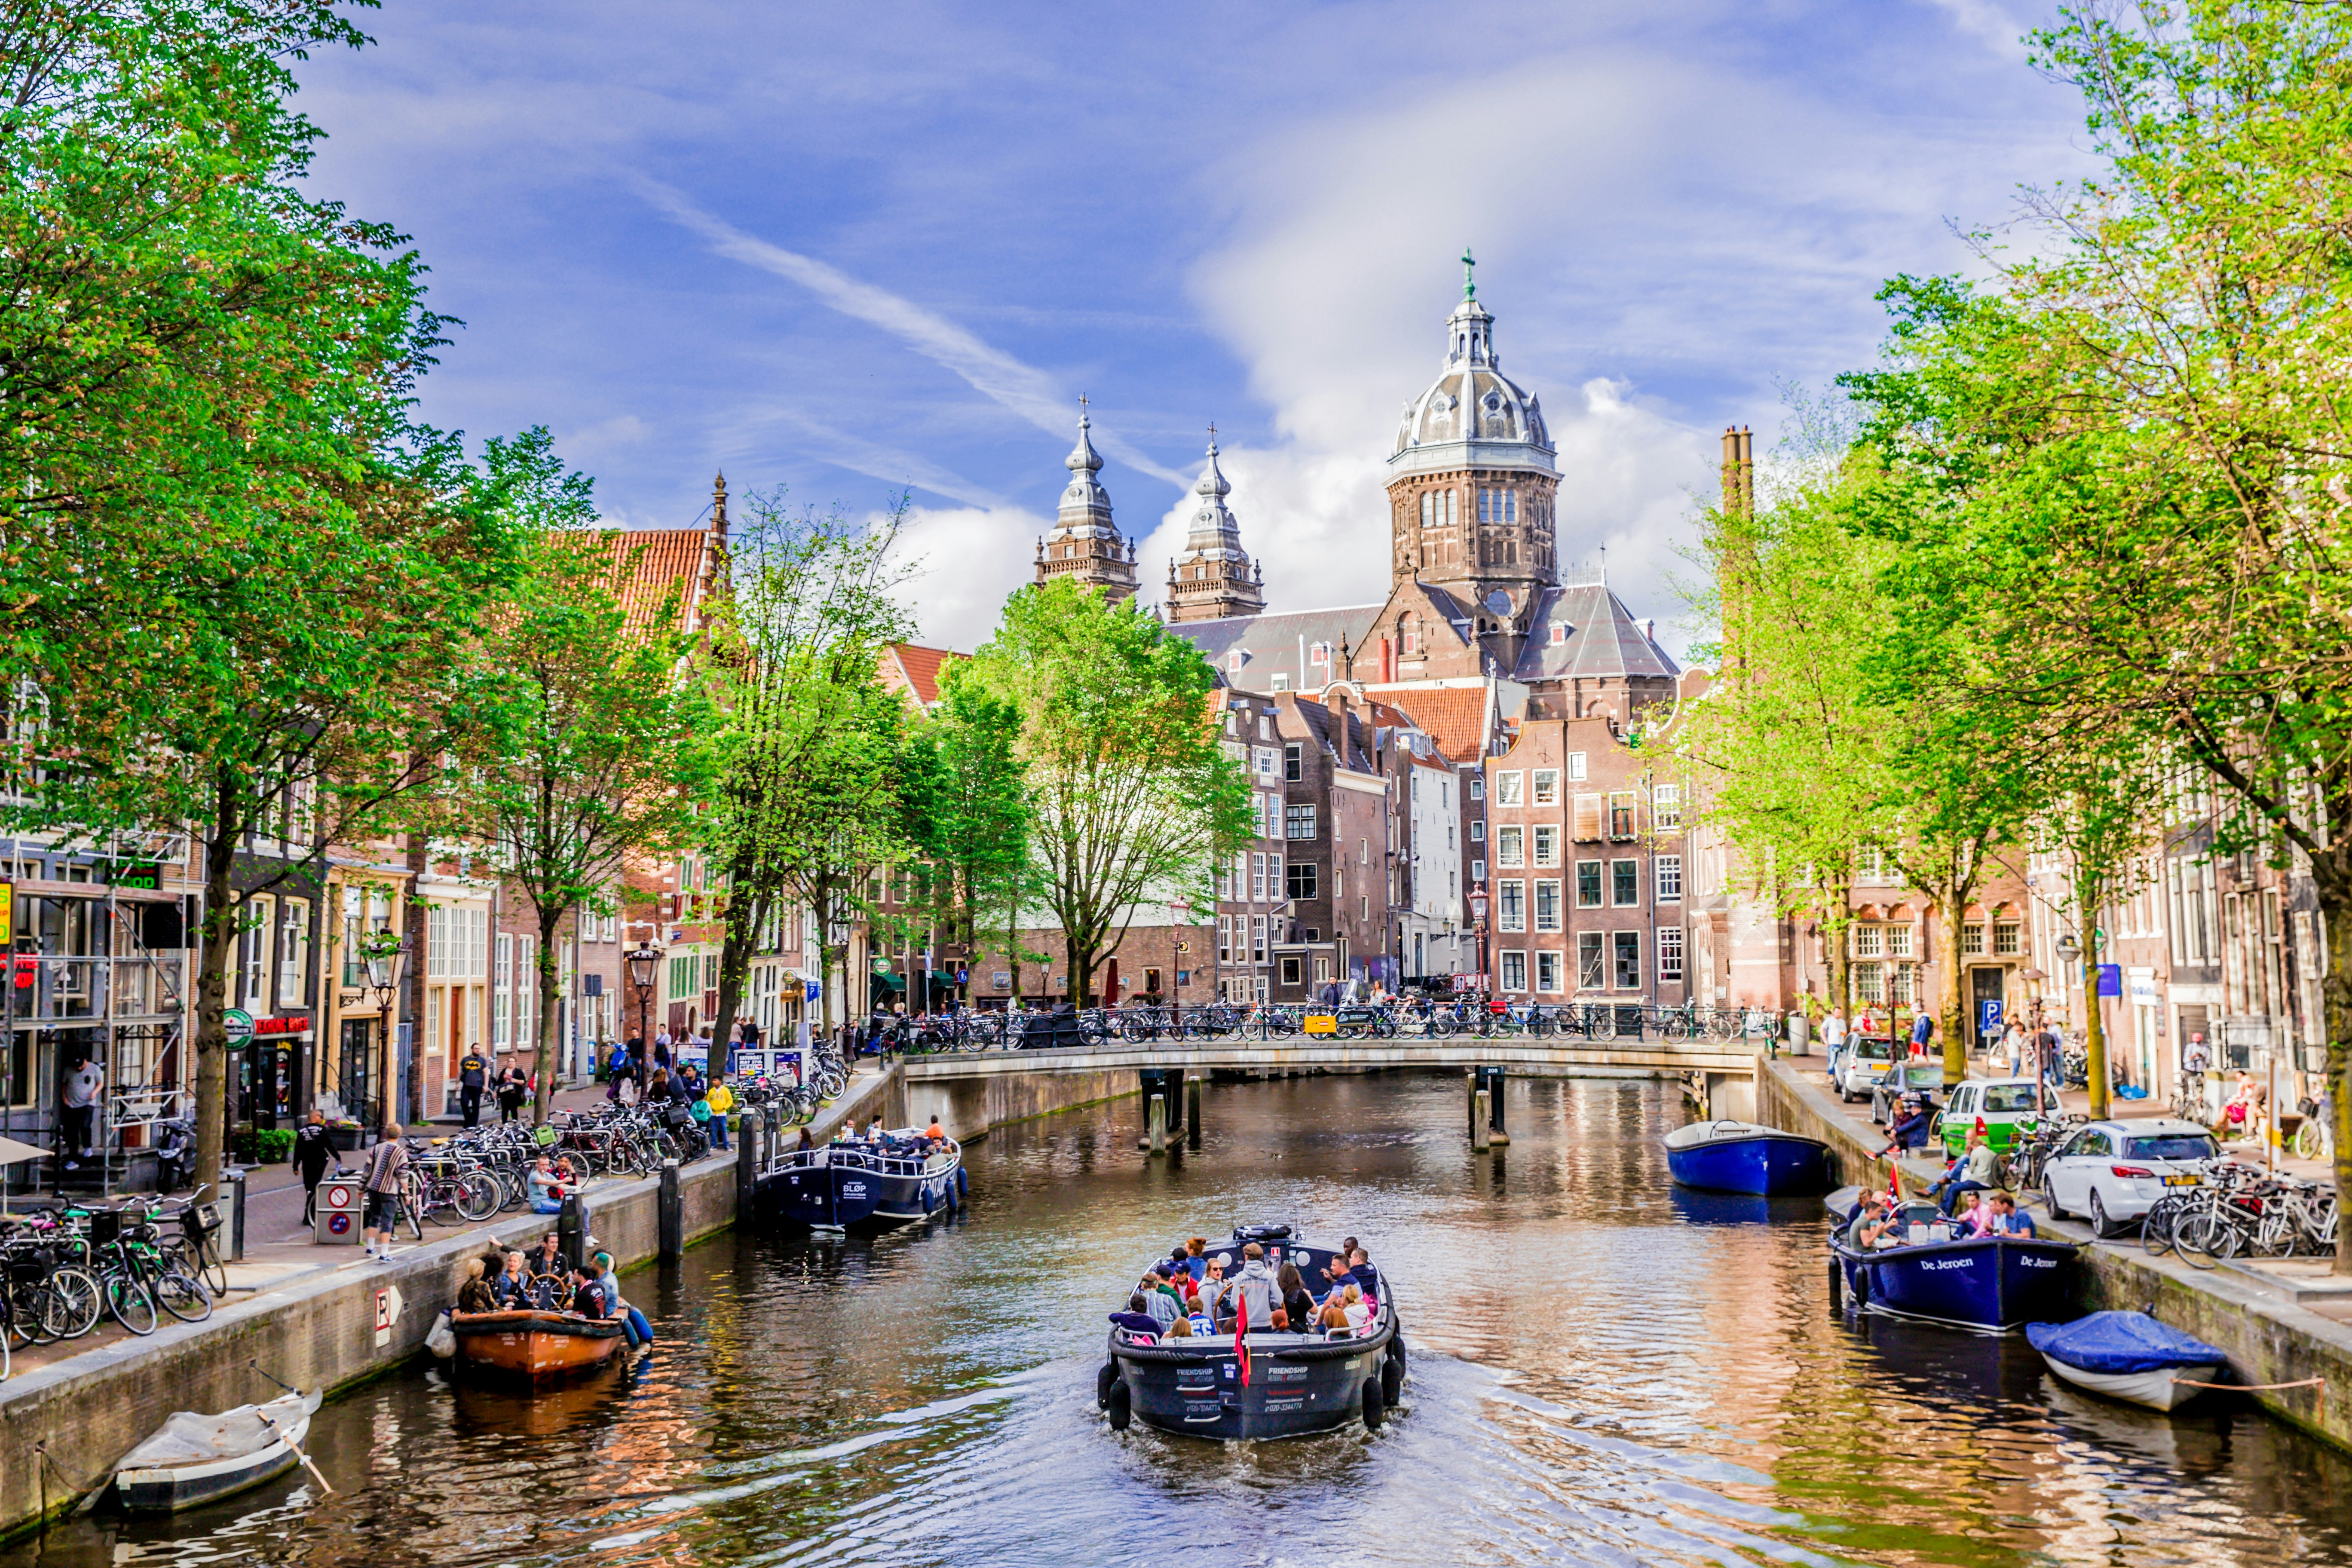 En båt, fylld med människor, kryssar längs en kanal i Amsterdam en solig dag.  De omgivande gatorna är upptagna av cyklister och fotgängare.